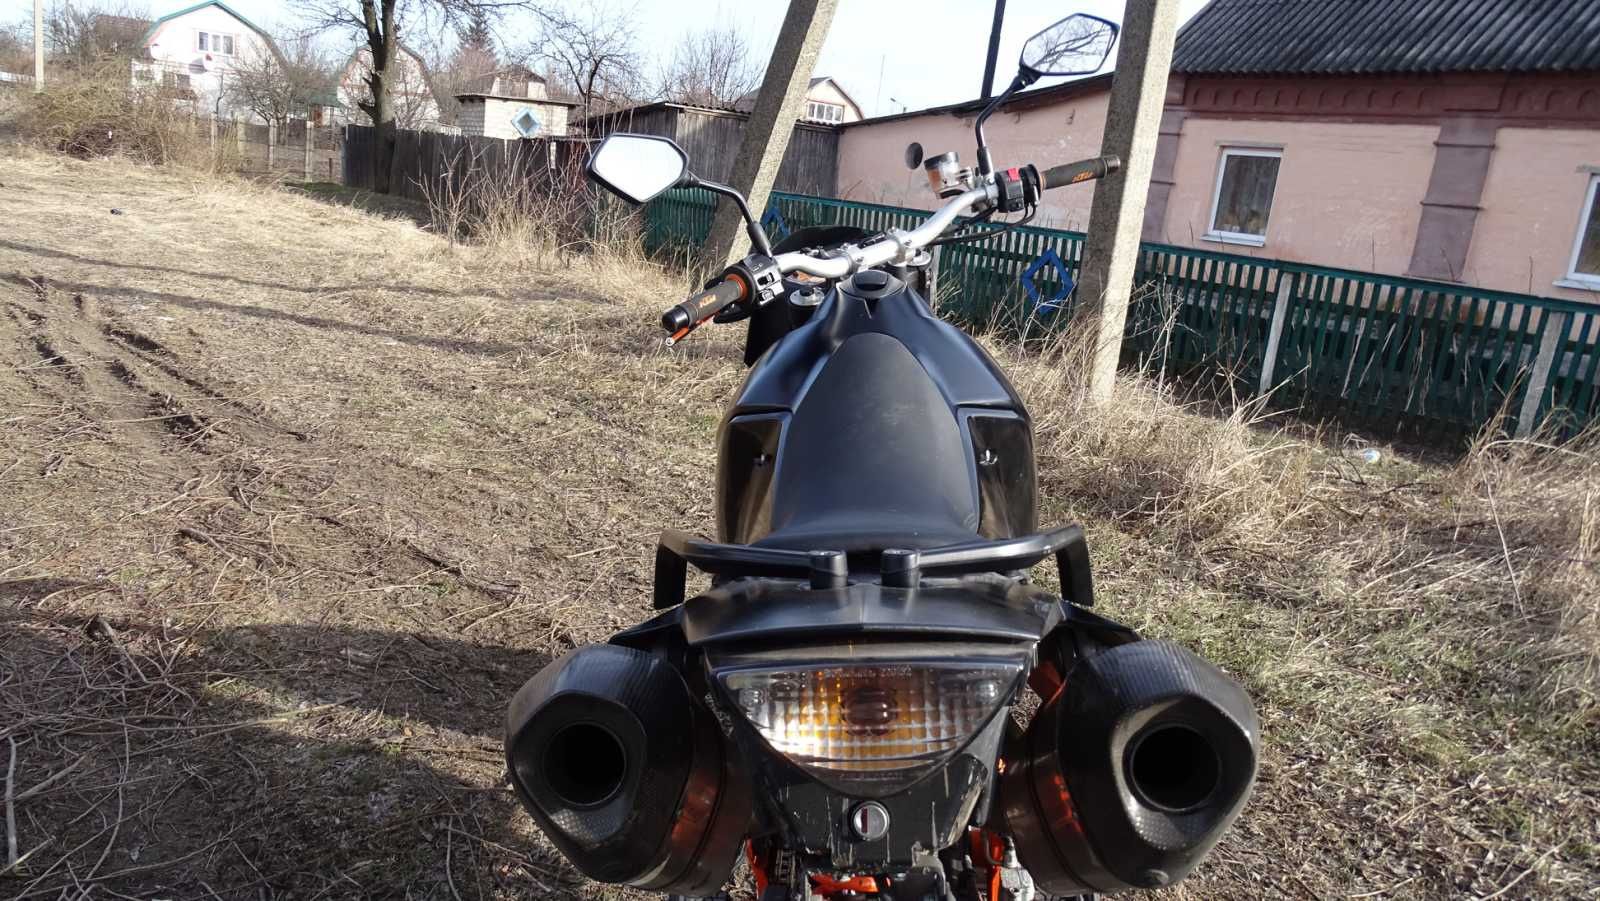 Мотоцикл KTM LC 8 объем 950